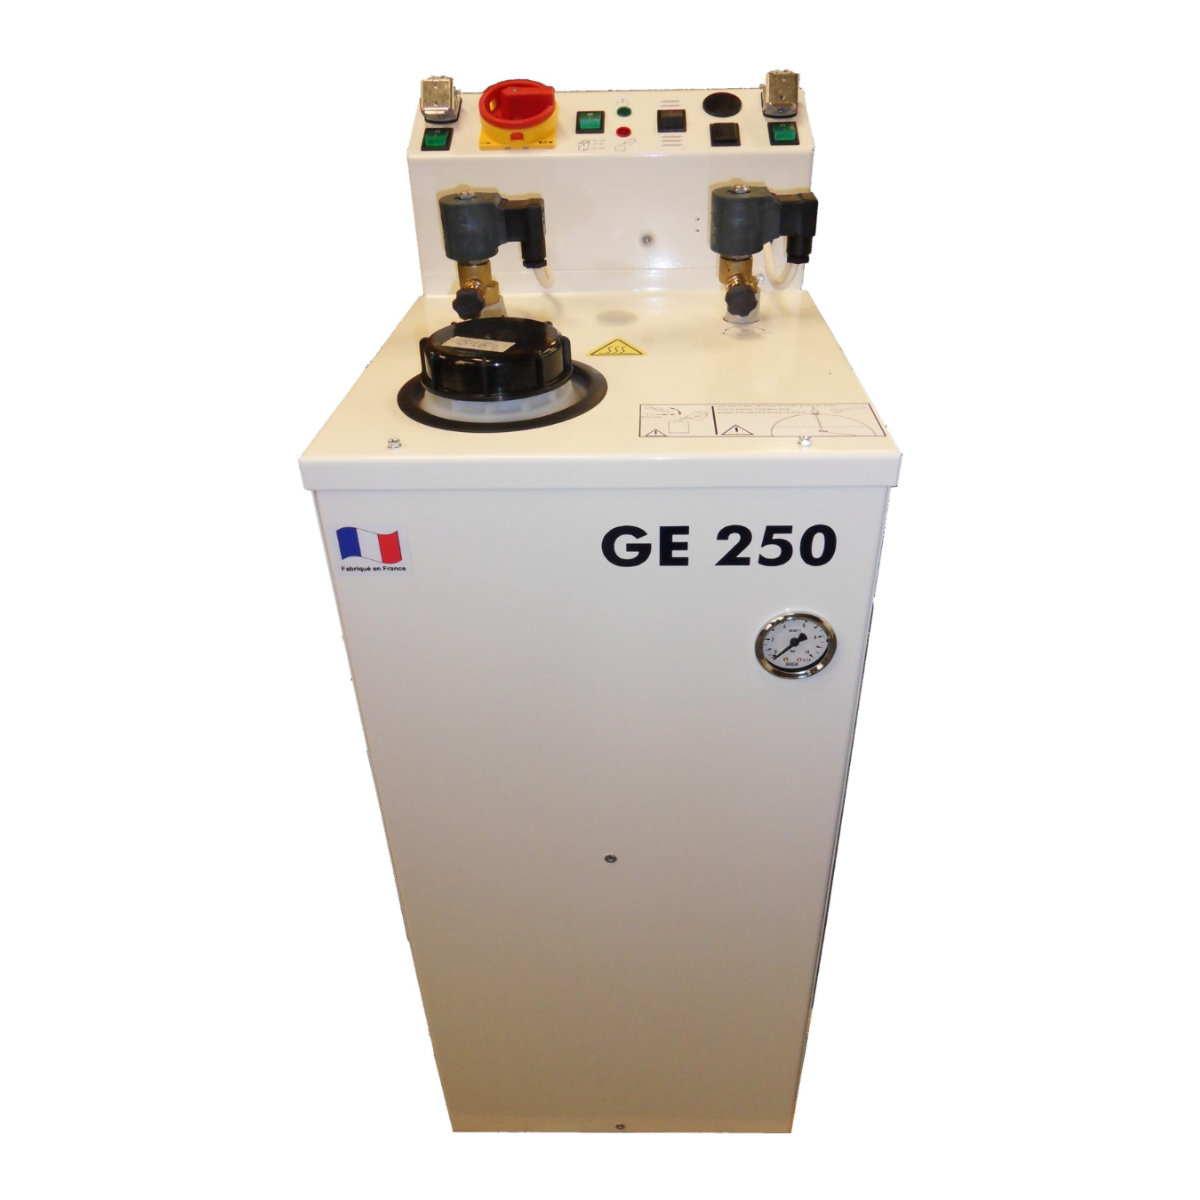 Générateur vapeur électrique à remplissage semi-automatique sans fer, Puissance 5 kW - GE 250 - Covemat_0